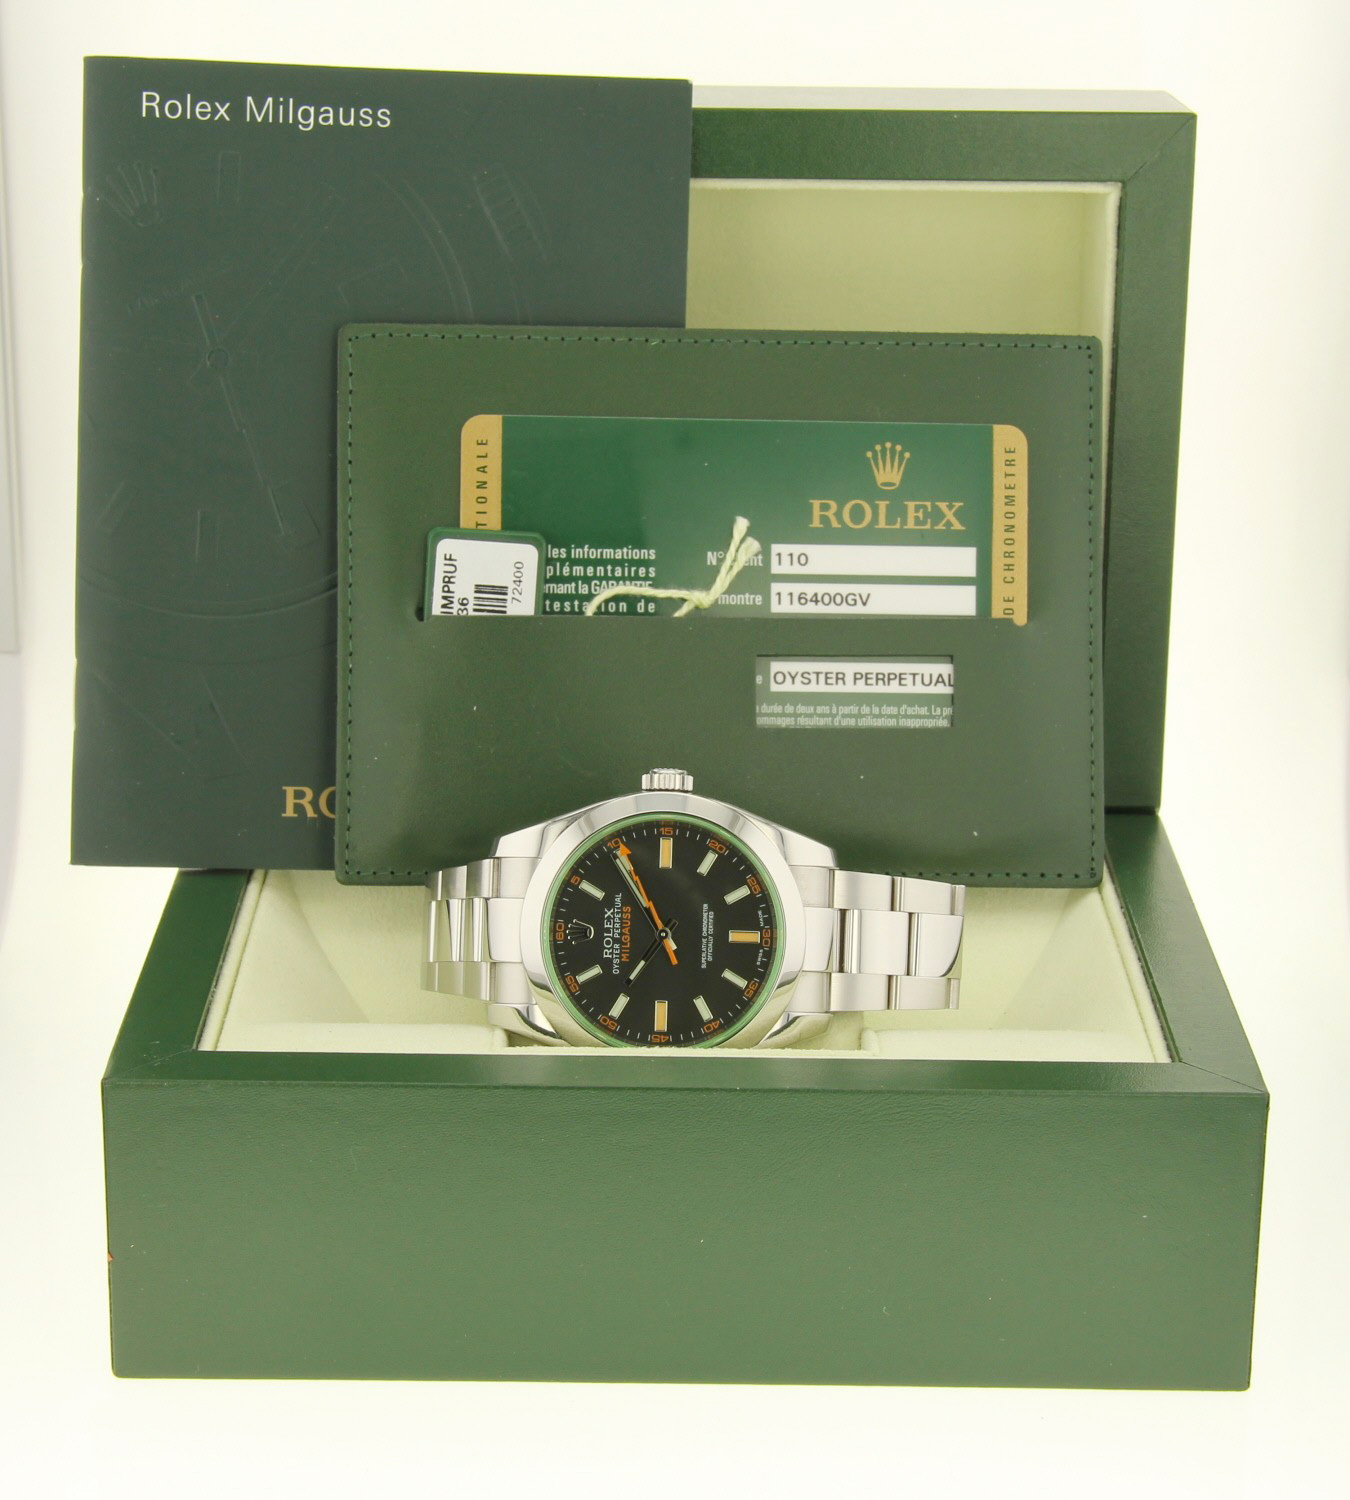 Rolex Milgauss 116400GV boîte et papiers